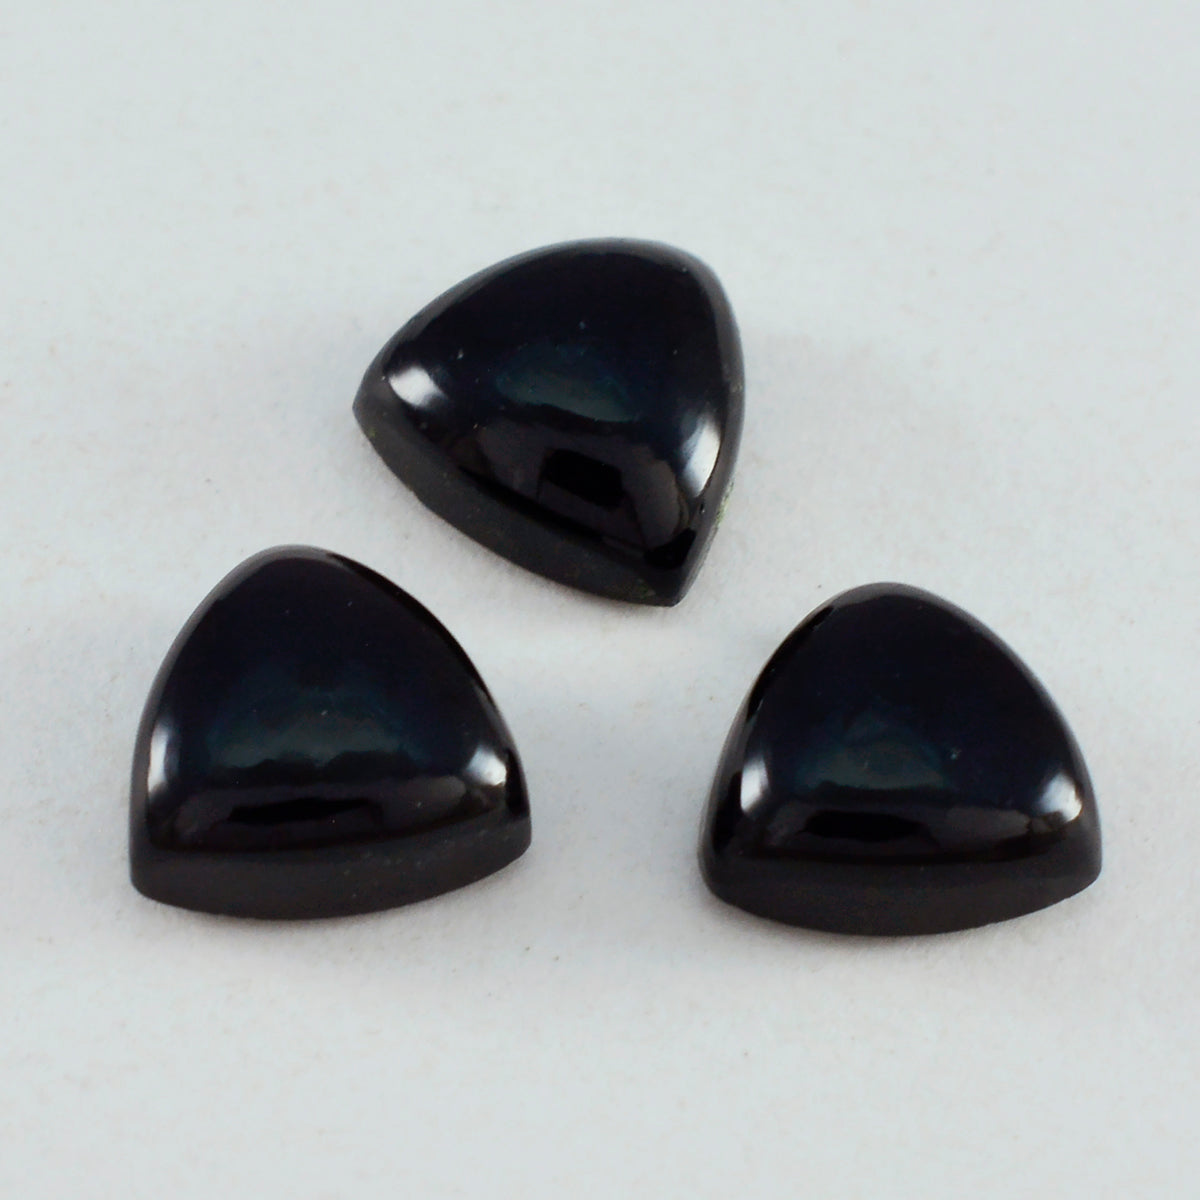 Riyogems 1 Stück schwarzer Onyx-Cabochon, 12 x 12 mm, Billionenform, gute Qualität, lose Edelsteine